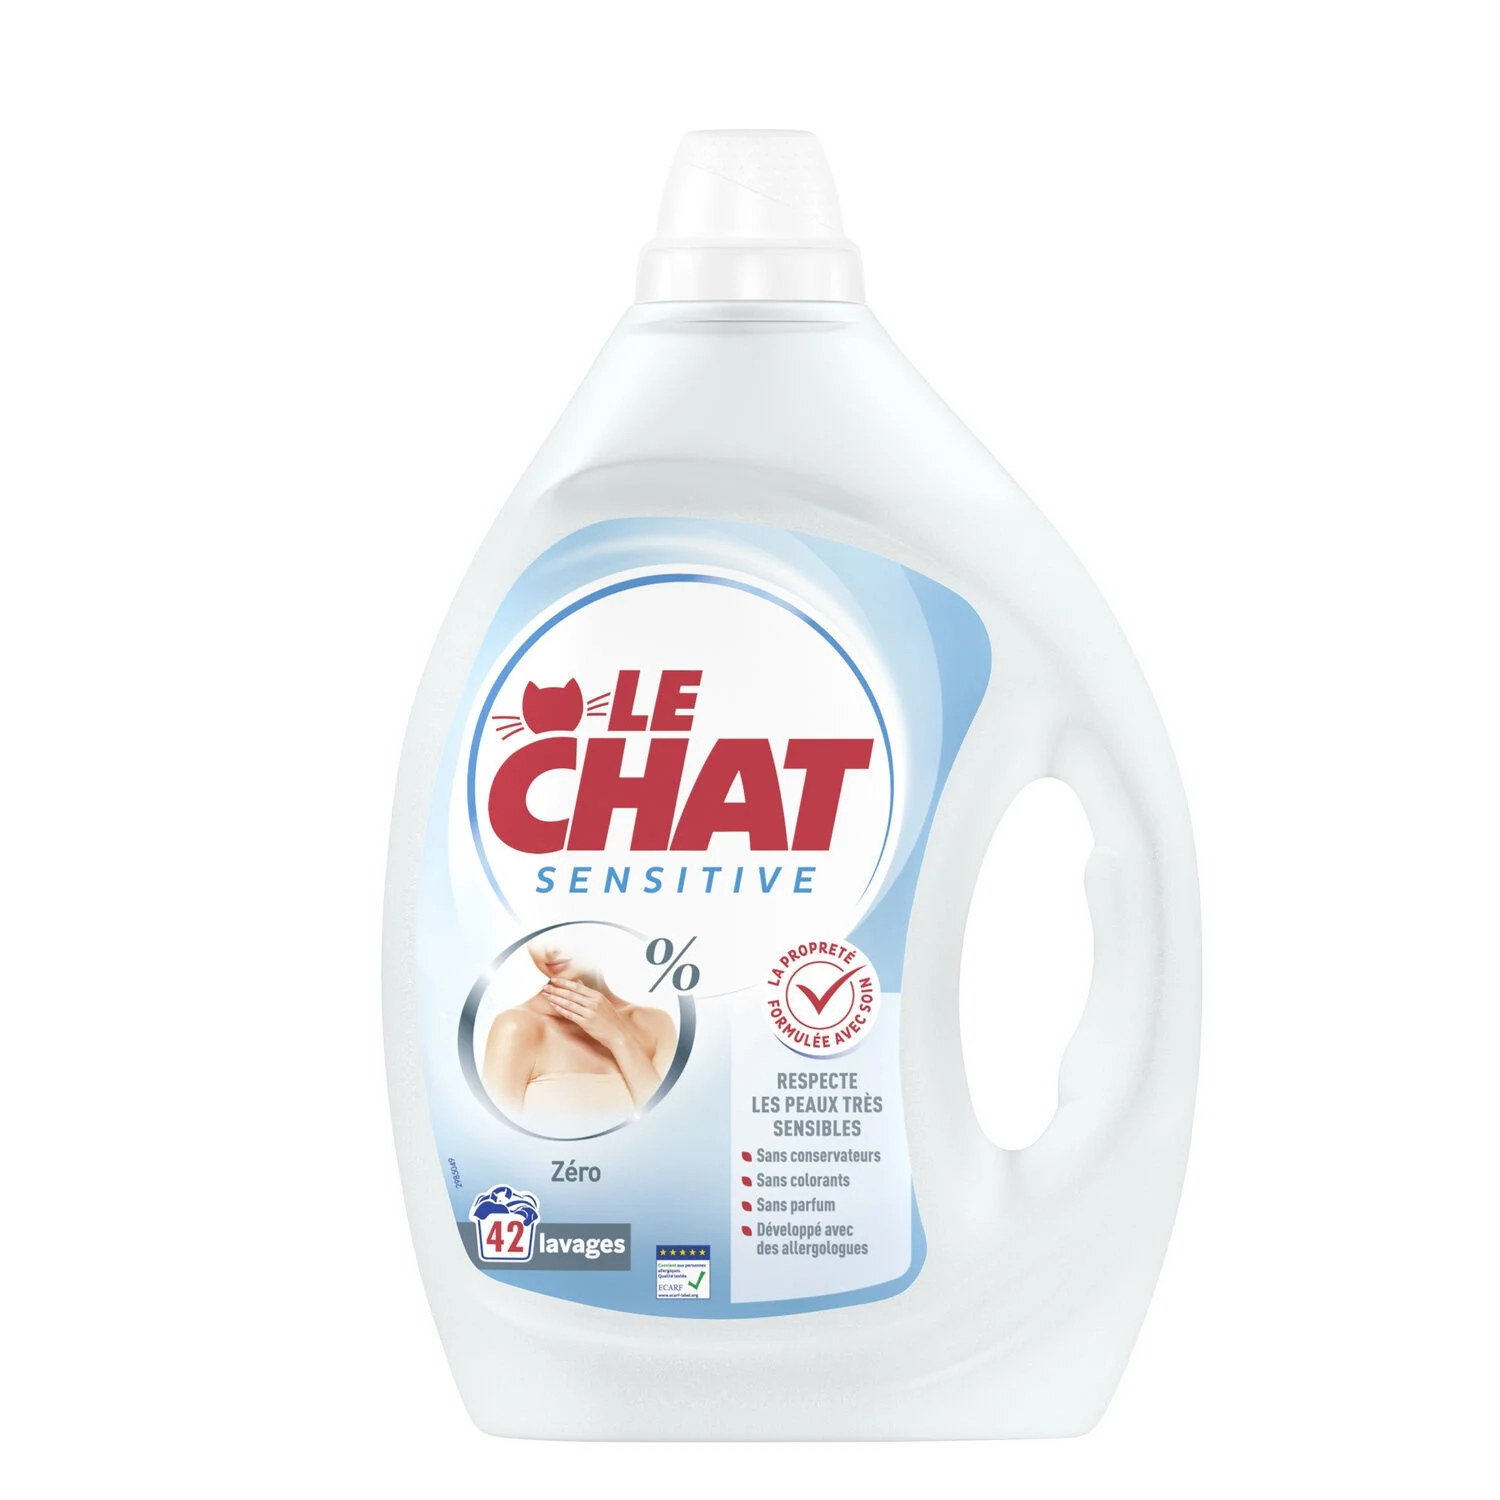 Detergente Líquido Sensível 0% X42 Lavagens - Le Chat